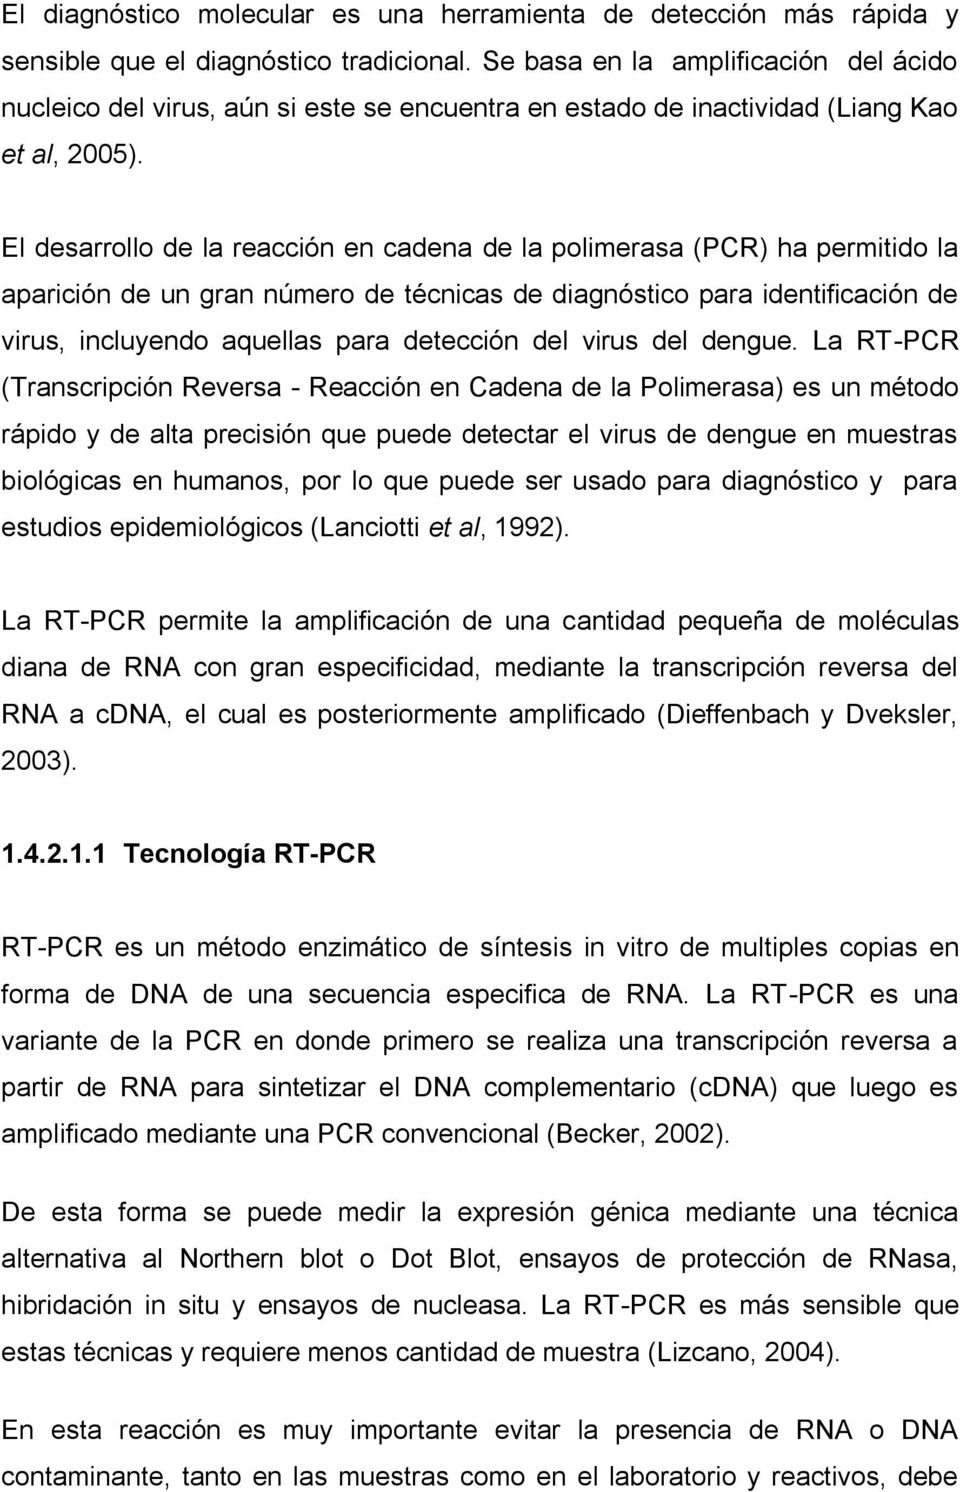 El desarrollo de la reacción en cadena de la polimerasa (PCR) ha permitido la aparición de un gran número de técnicas de diagnóstico para identificación de virus, incluyendo aquellas para detección